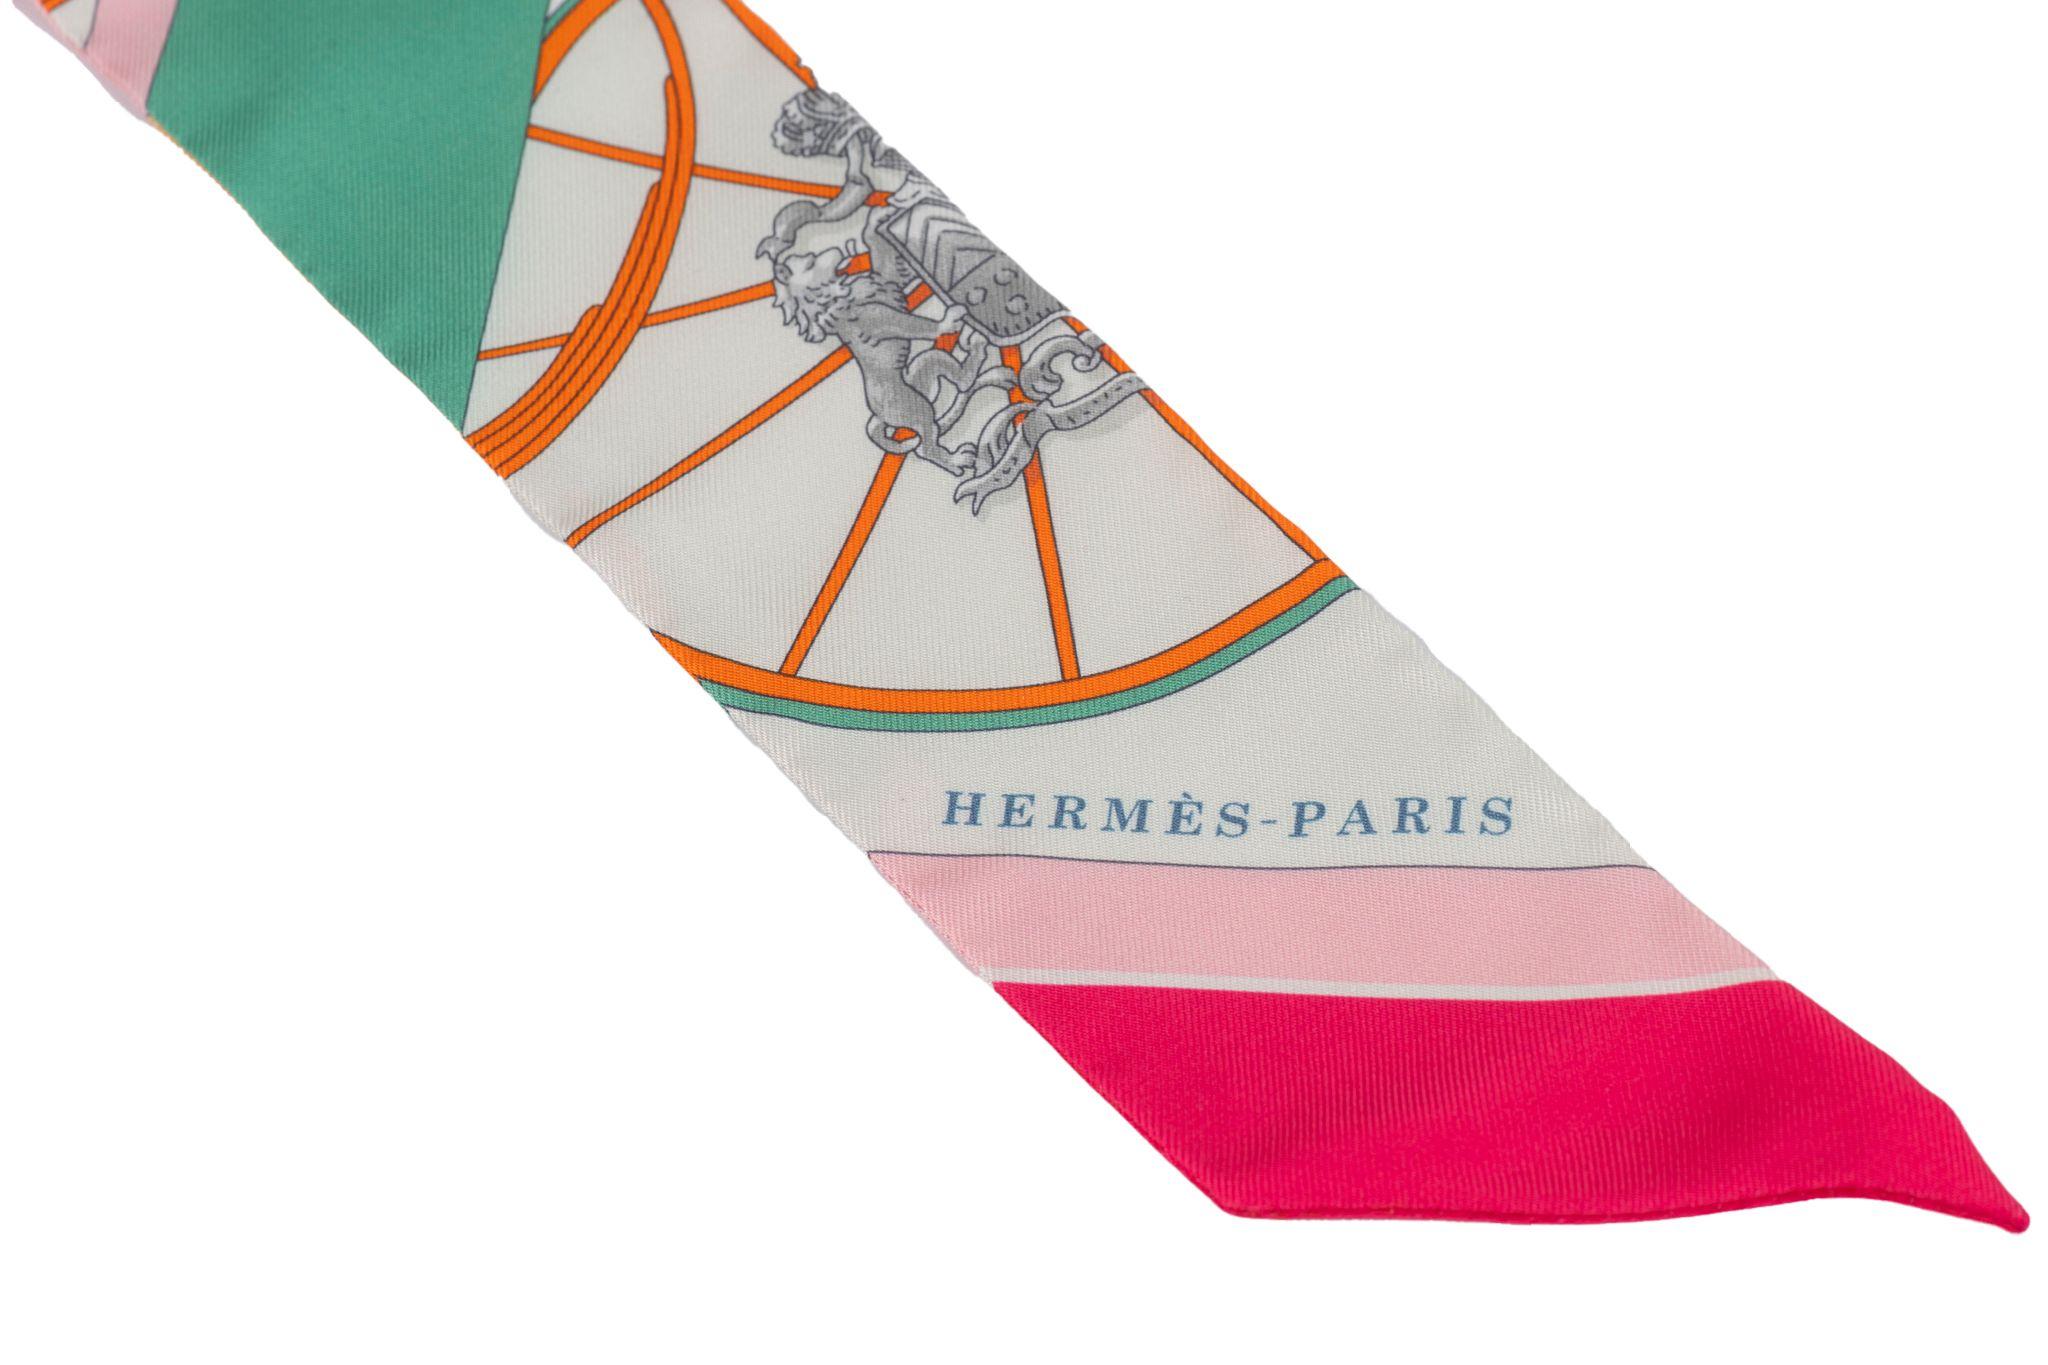 Hermès Twilly Seidenköperschal mit Beschlägen. Can als Schal oder als Armband getragen werden. Kommt mit Originalverpackung.